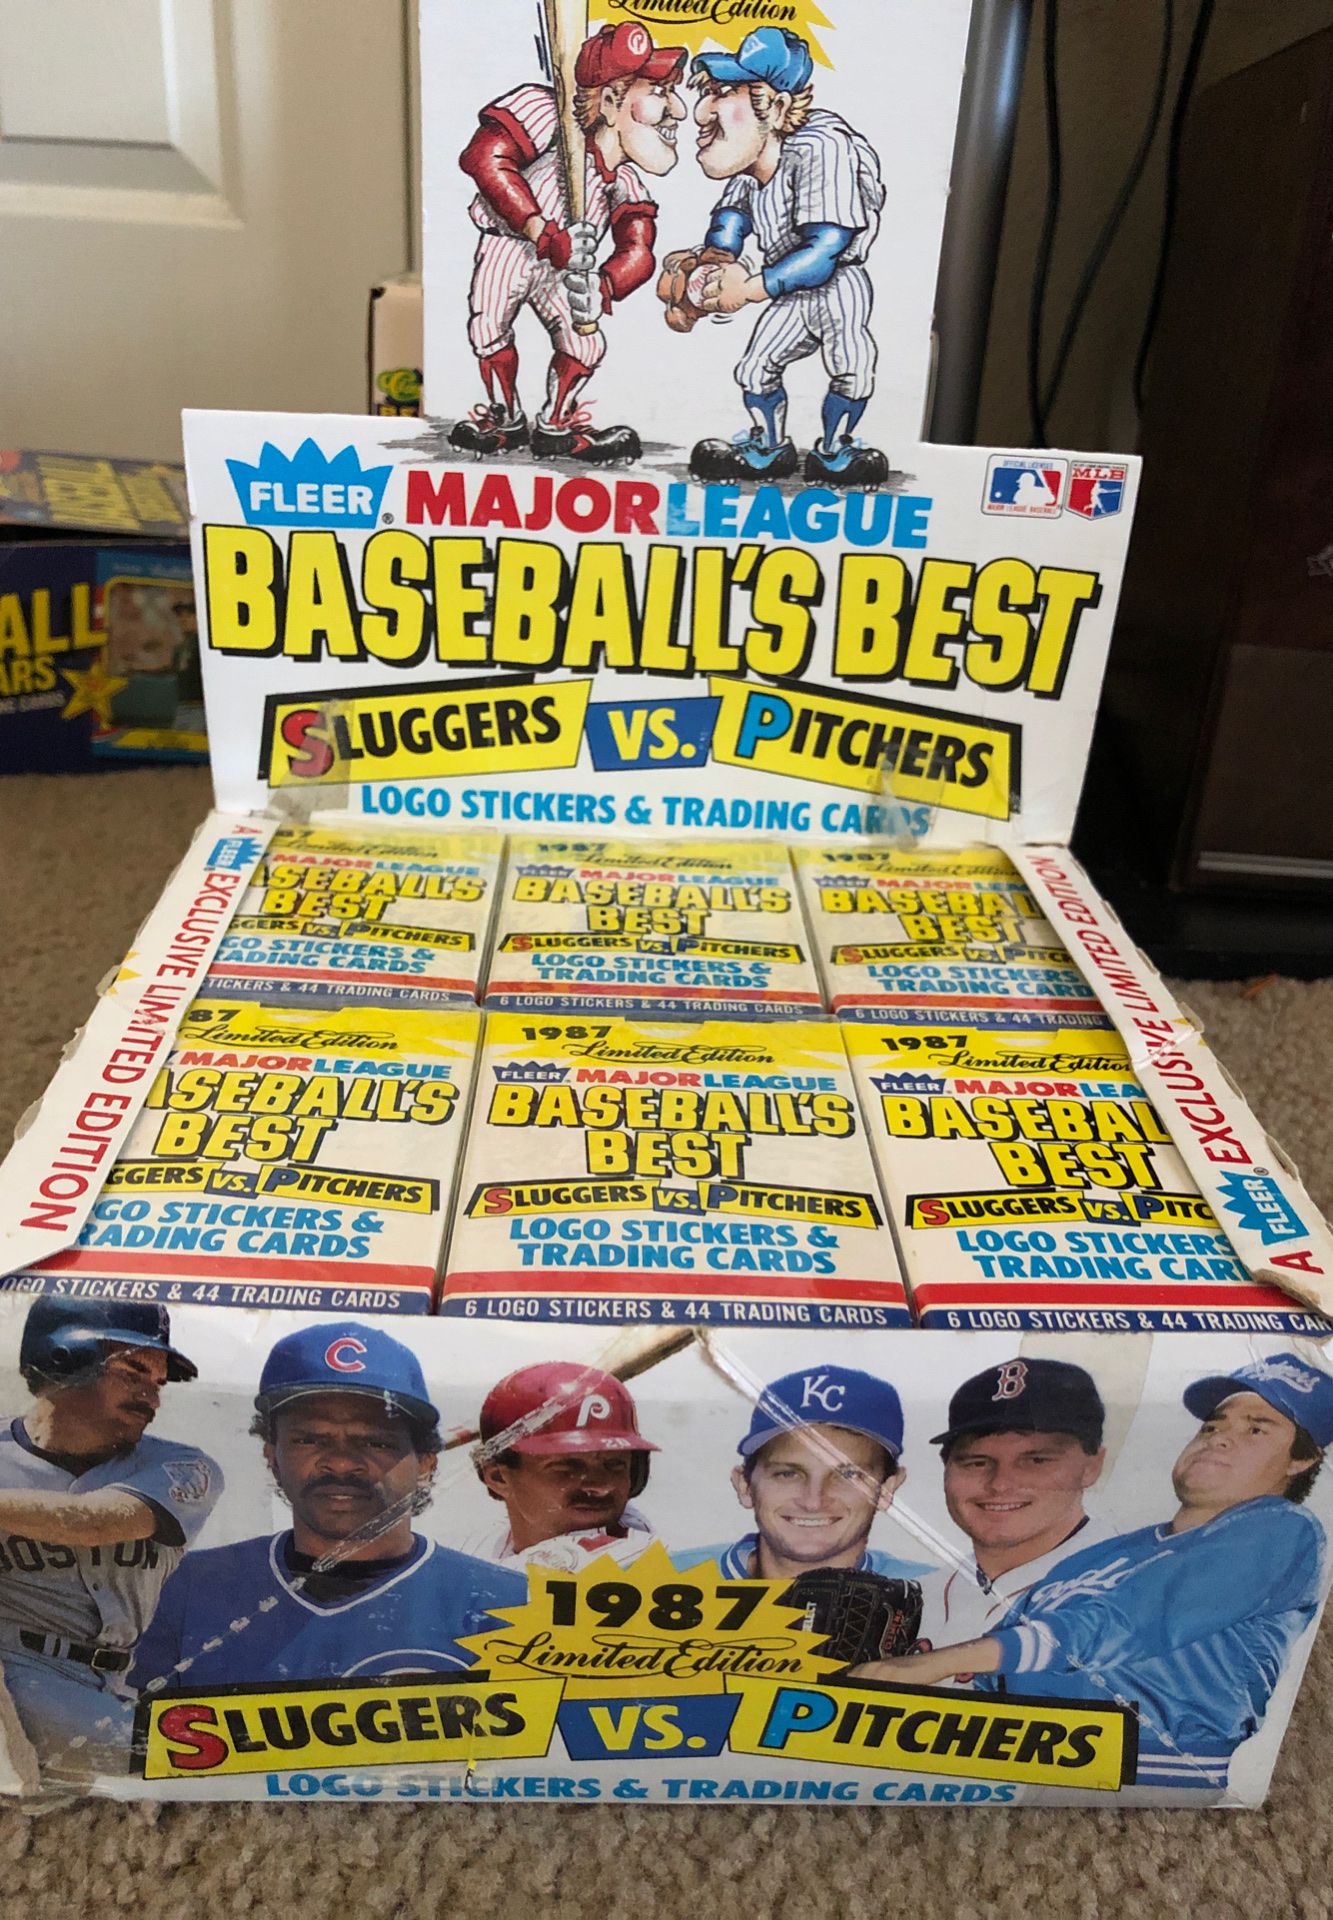 23 set’s per box of 1987 fleer baseballs best each set has 44 cards per set